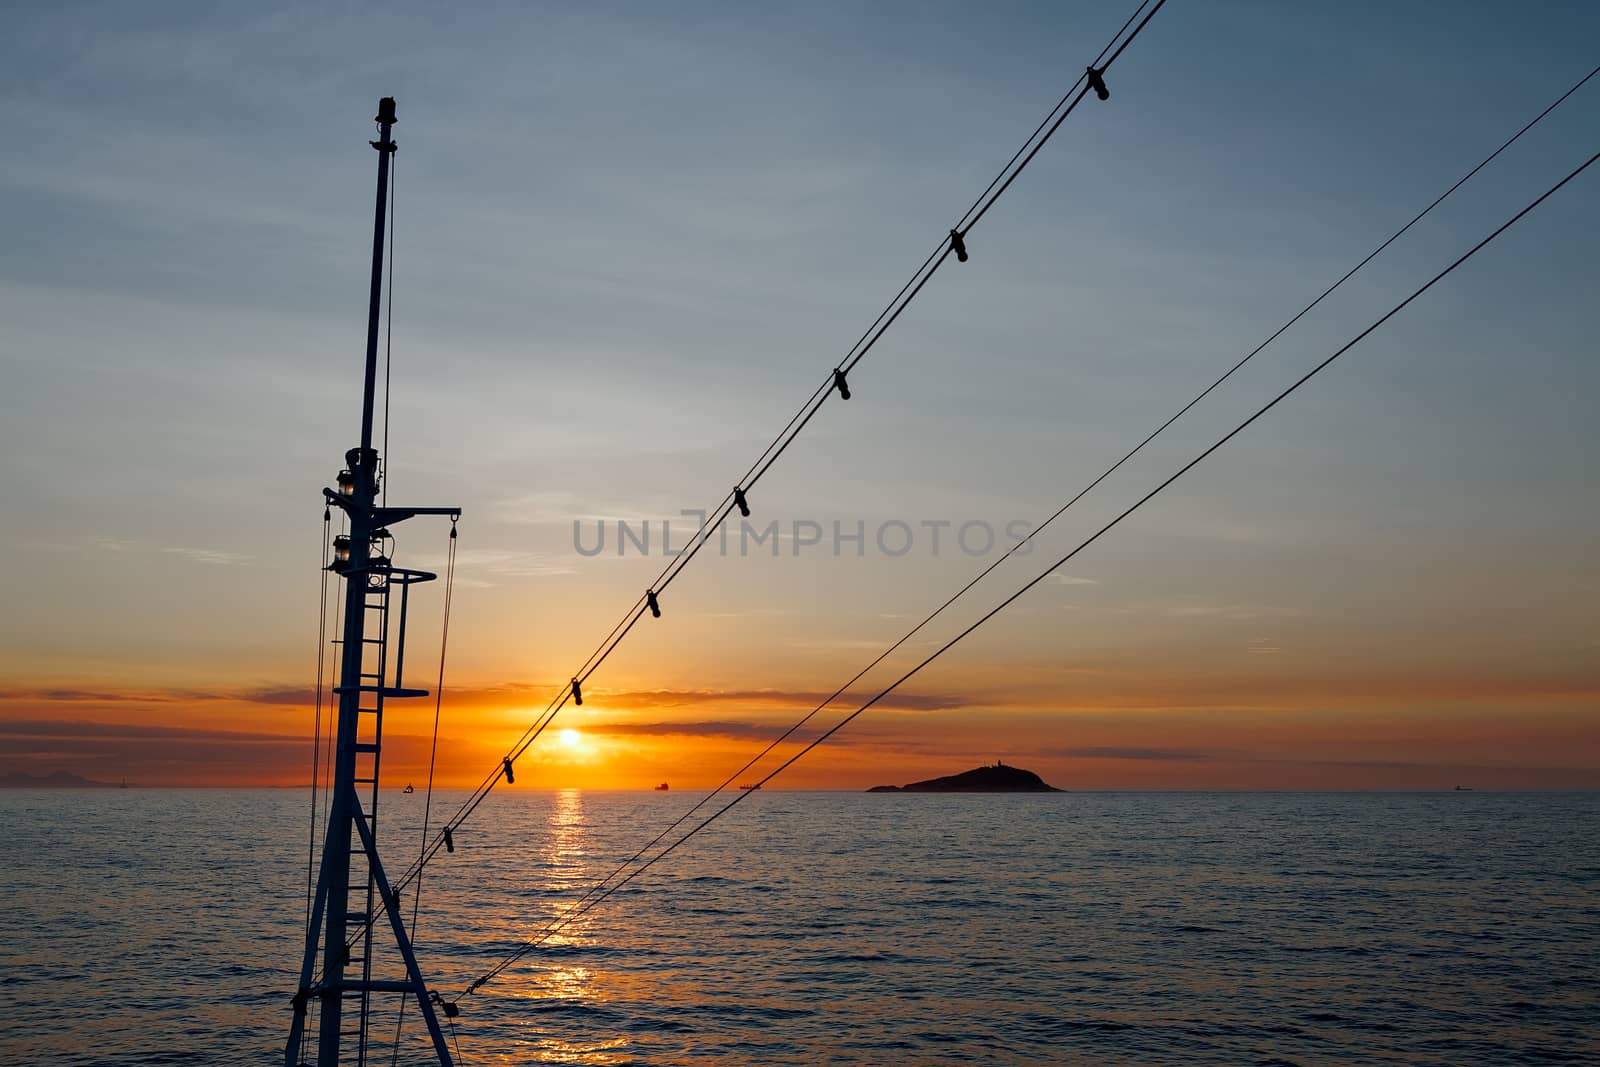 Beautiful sunset viewed by a ship